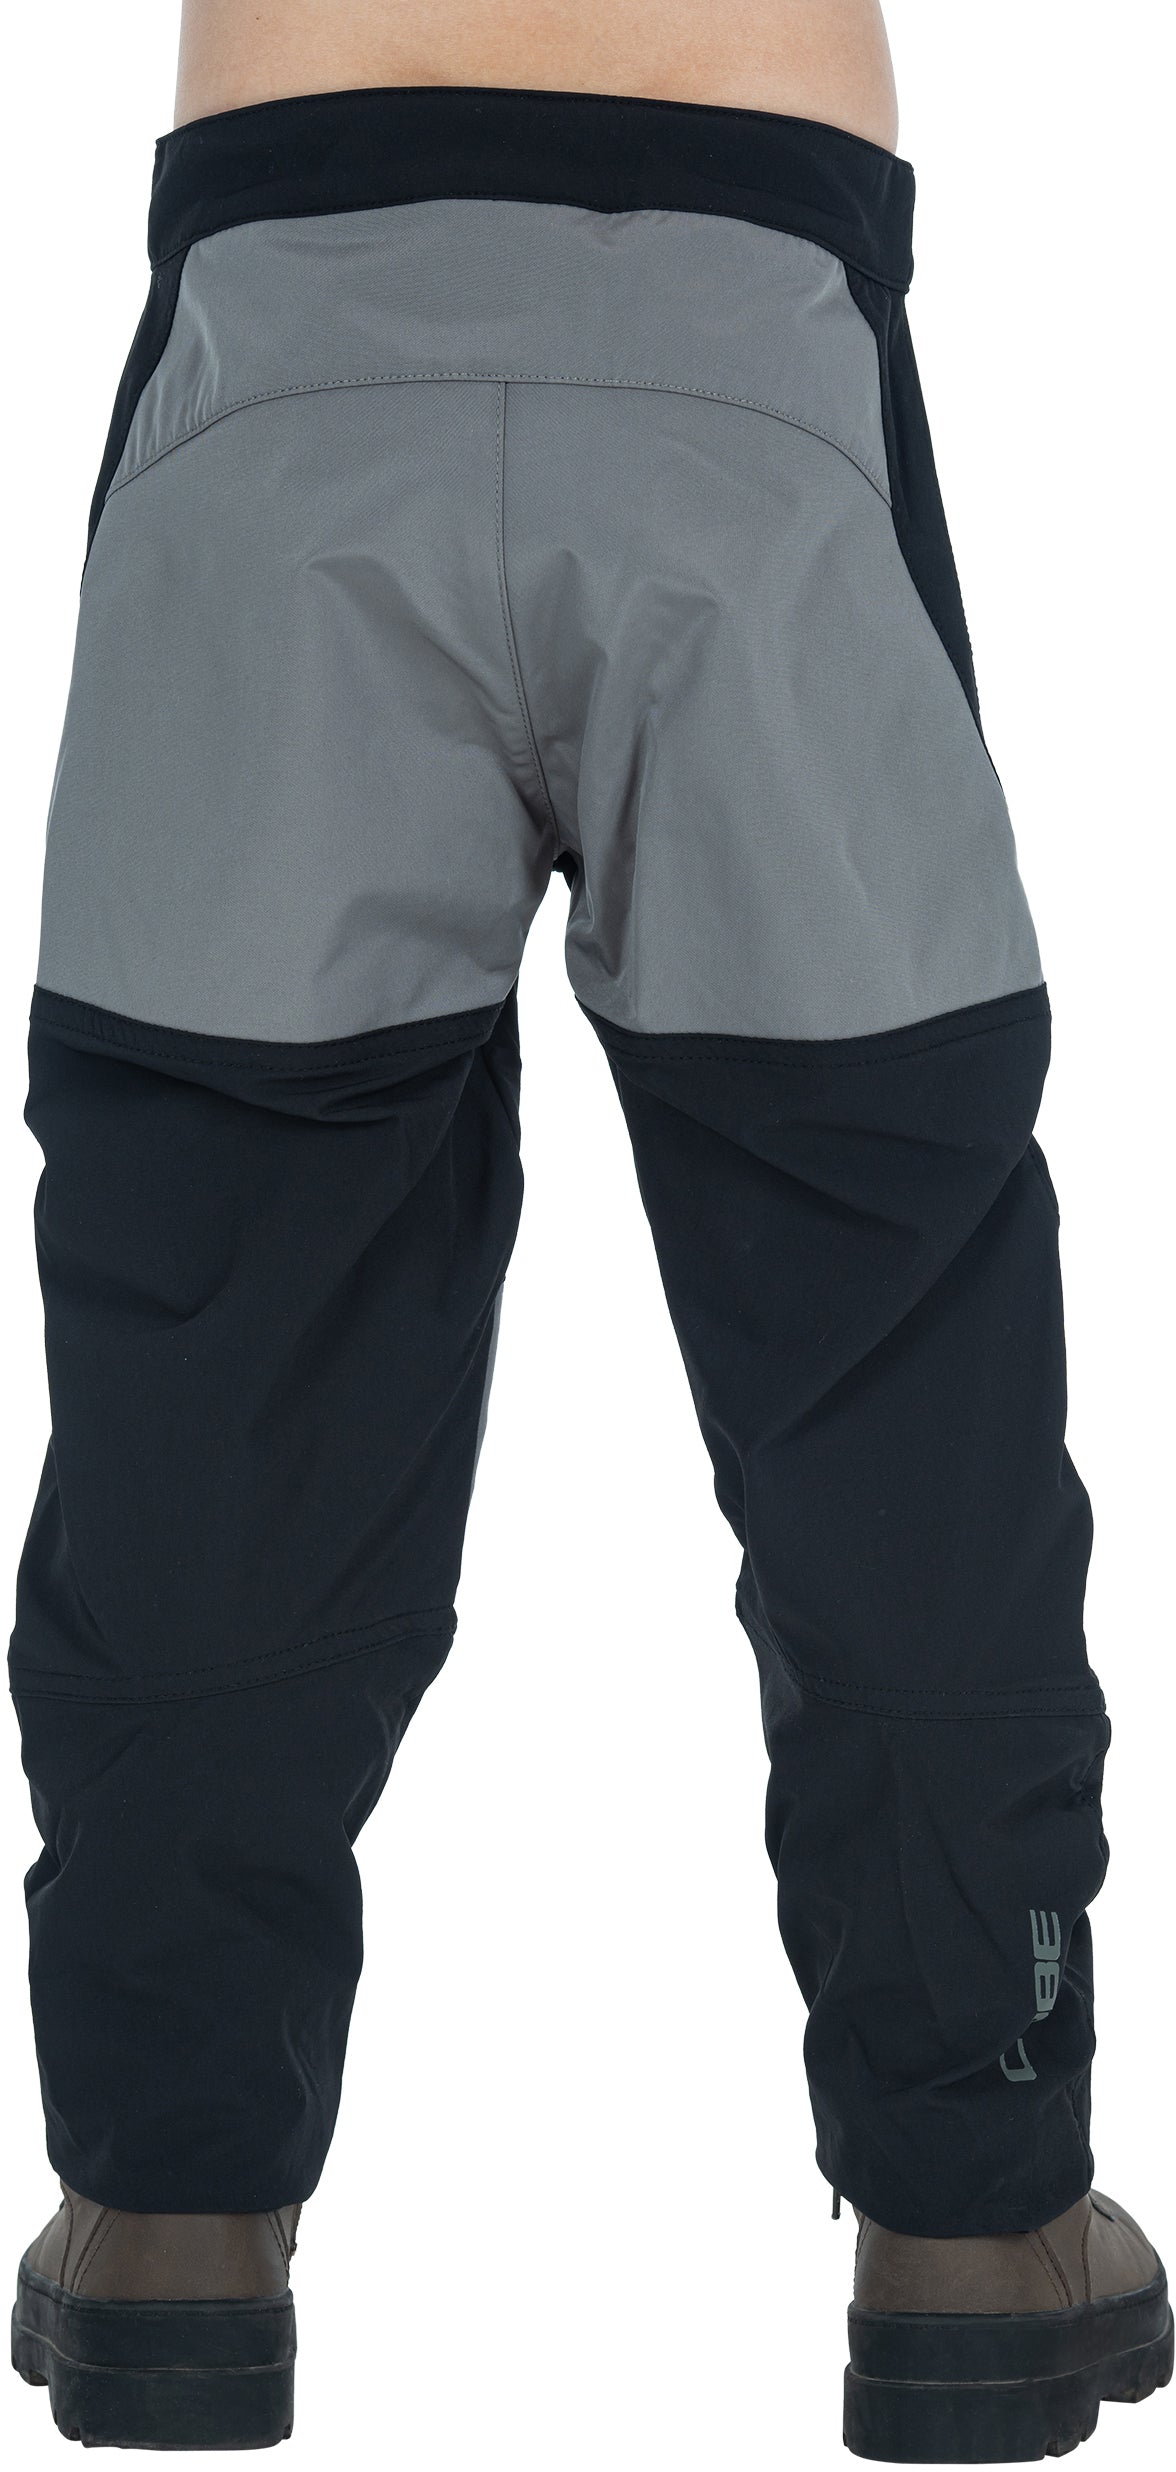 CUBE VERTEX Lightweight Baggy Pants ROOKIE black´n´grey